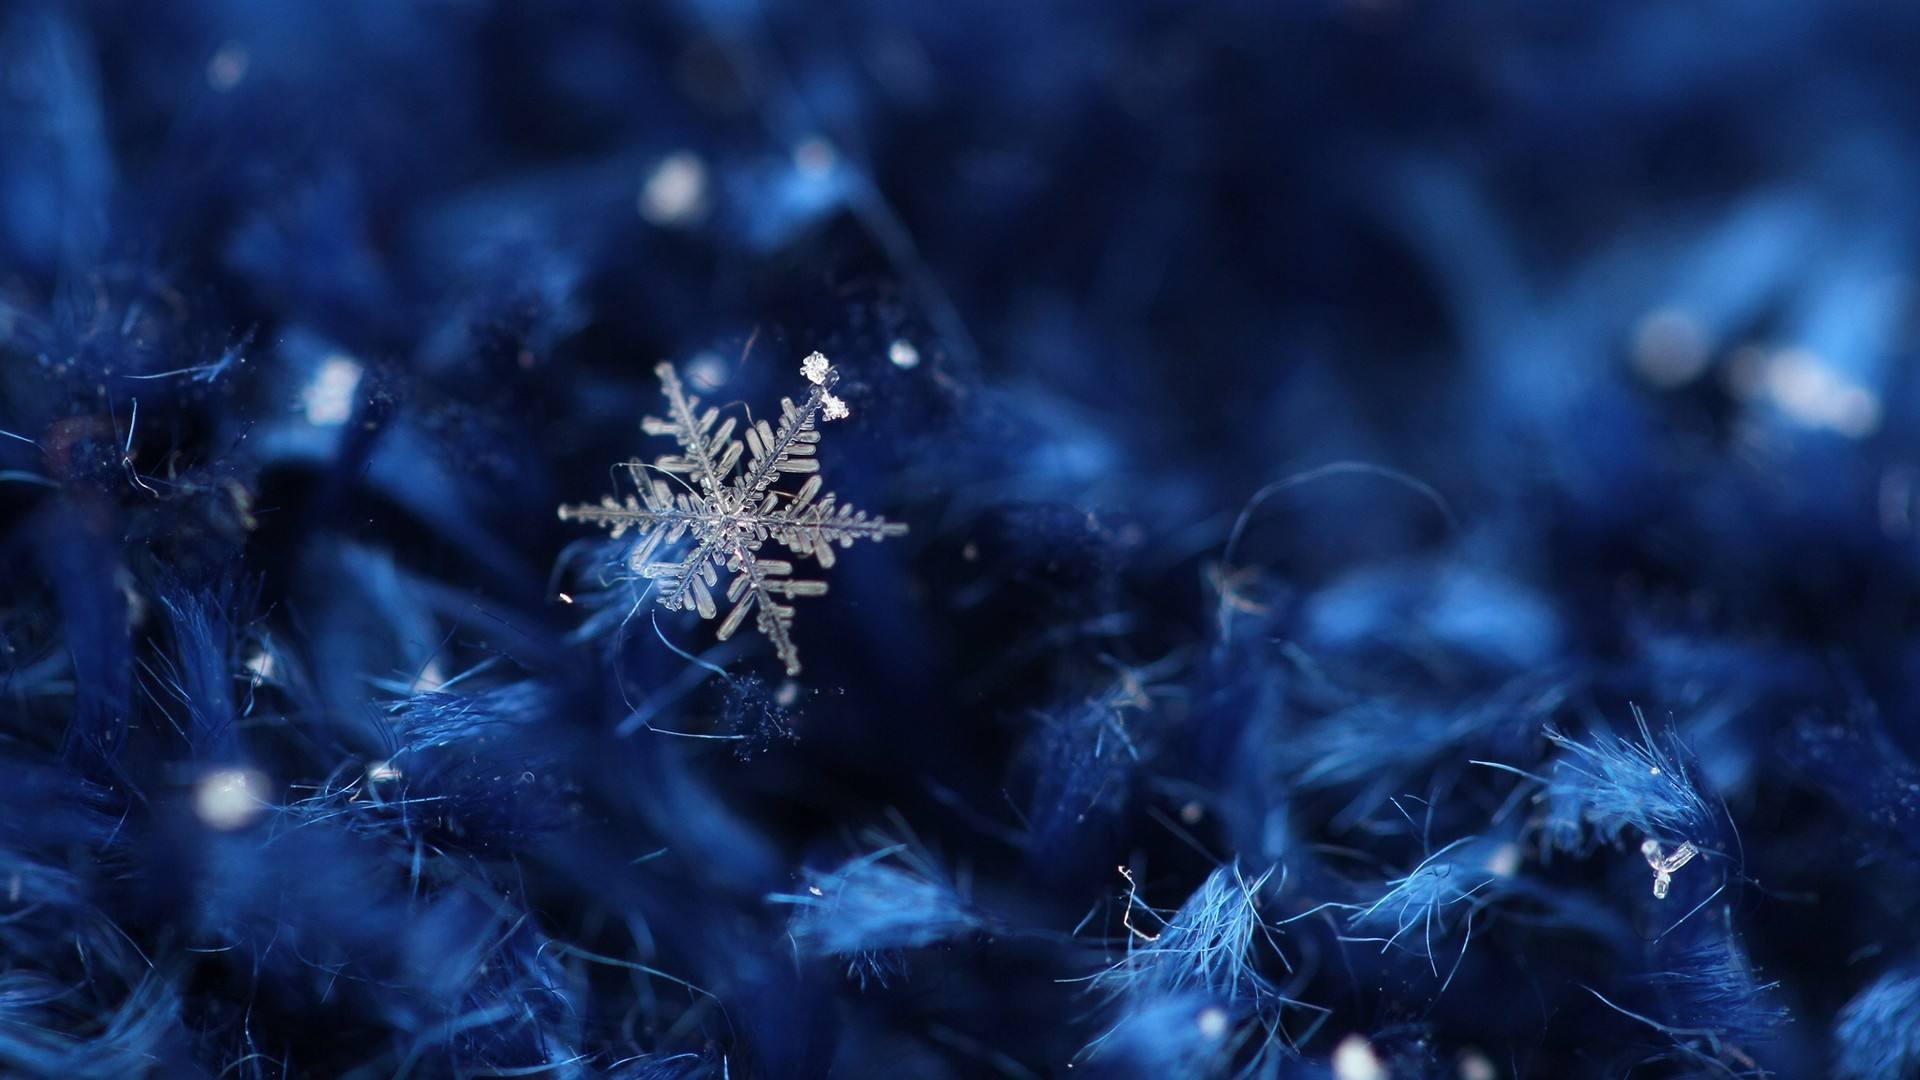 11张晶莹剔透的蓝色雪花PPT背景图片